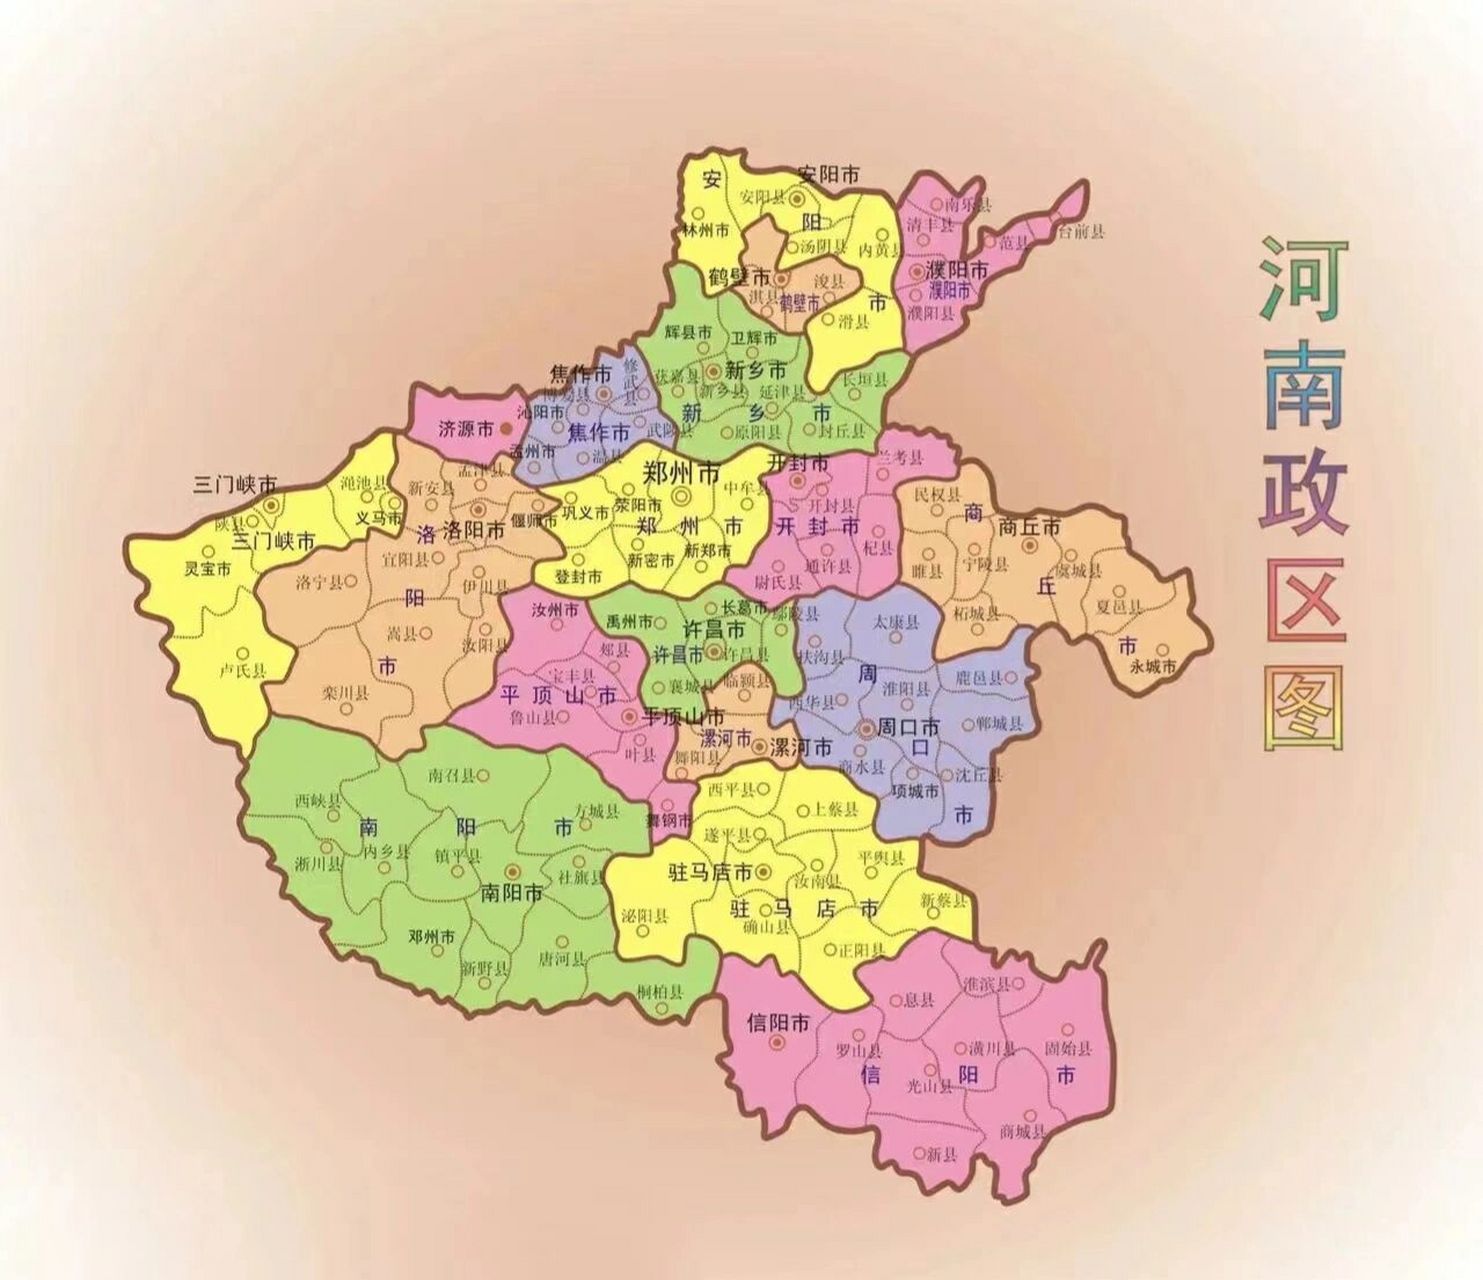 河南政区图 河南省,简称豫,省会郑州,位于中国中部,河南省界于北纬